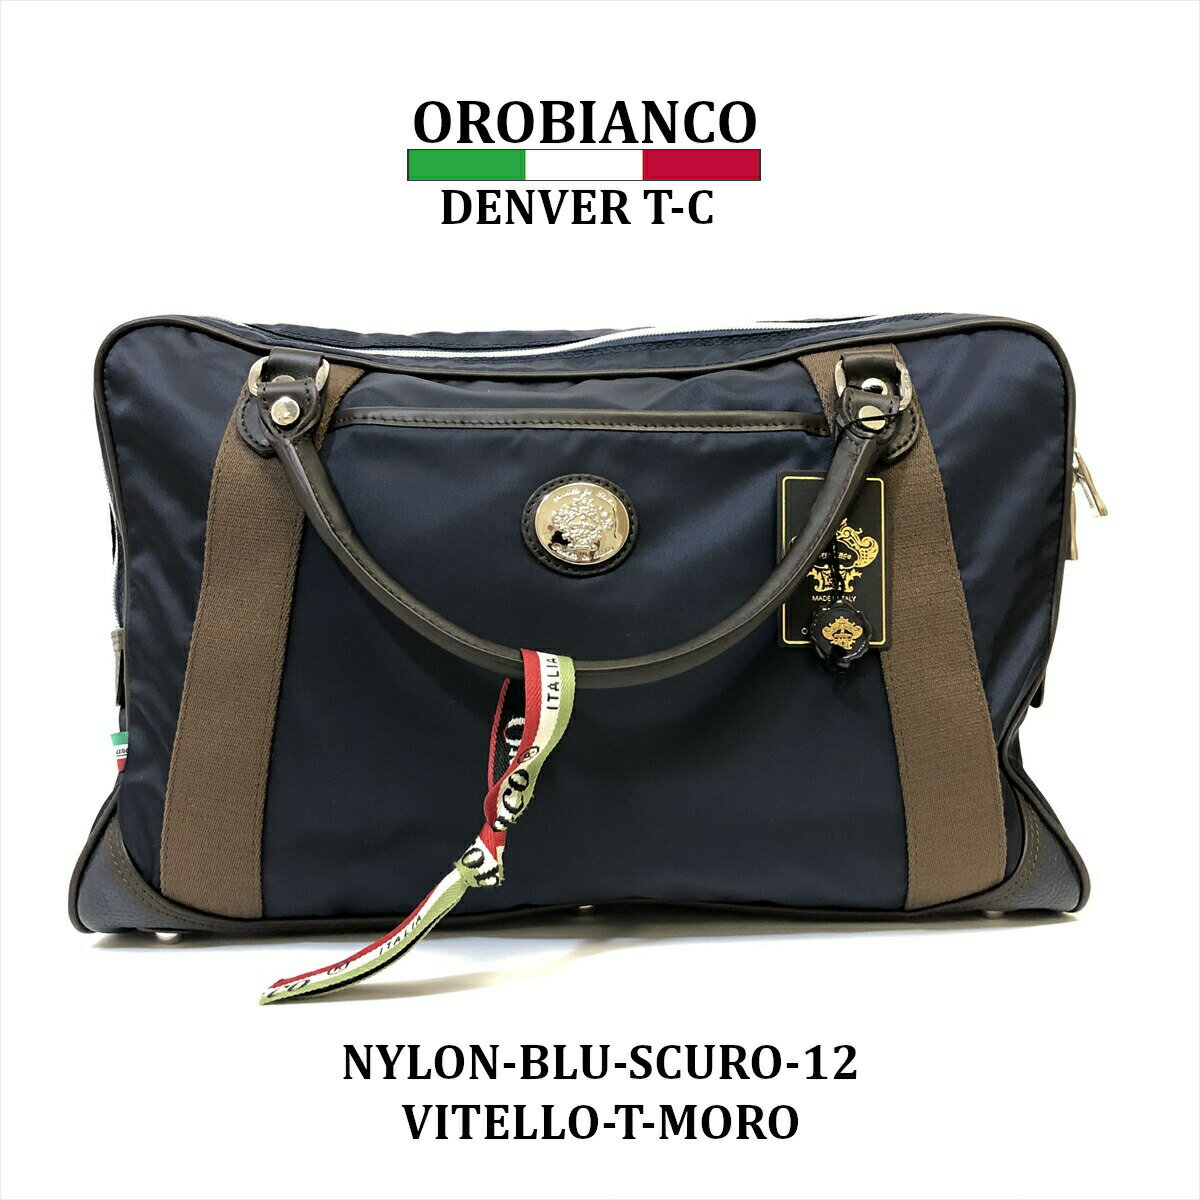 オロビアンコ ブリーフケース（メンズ） ブリーフケース ブラック メンズ ブランド オロビアンコ OROBIANCO DENVER TT-C イタリア製 ビジネス ケース トラベル 旅行 鞄 カバン 鞄 カジュアル かっこいい カッコイイ オシャレ おしゃれ